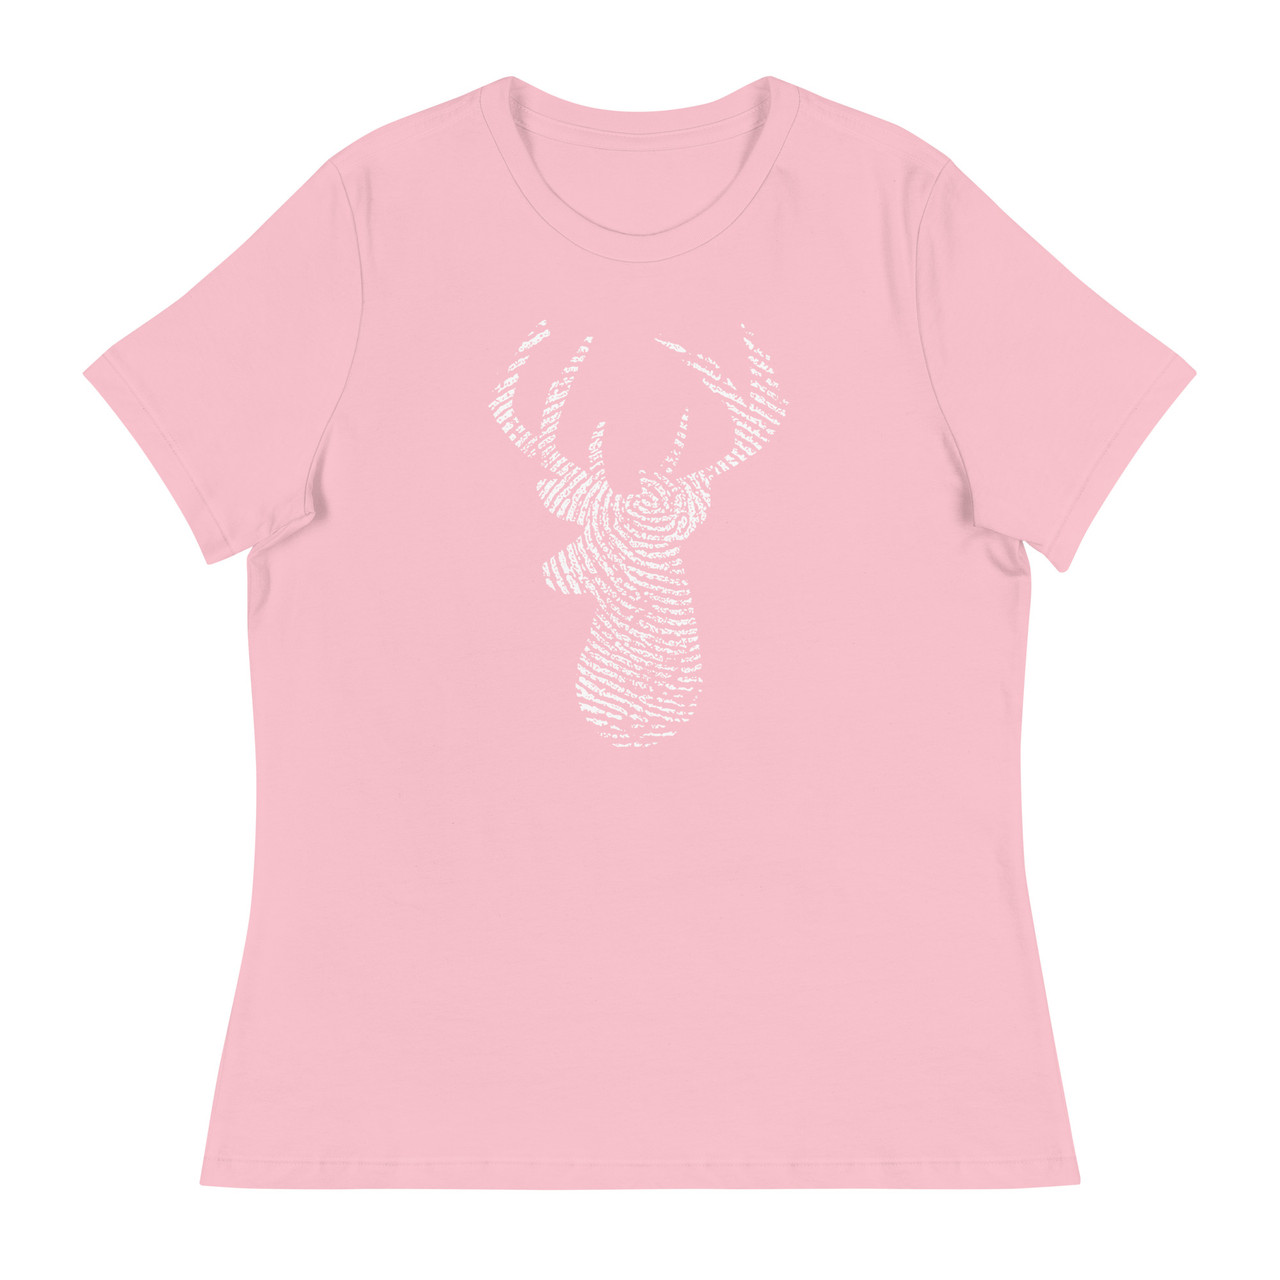 Deer Print Women's Relaxed T-Shirt - Bella + Canvas 6400